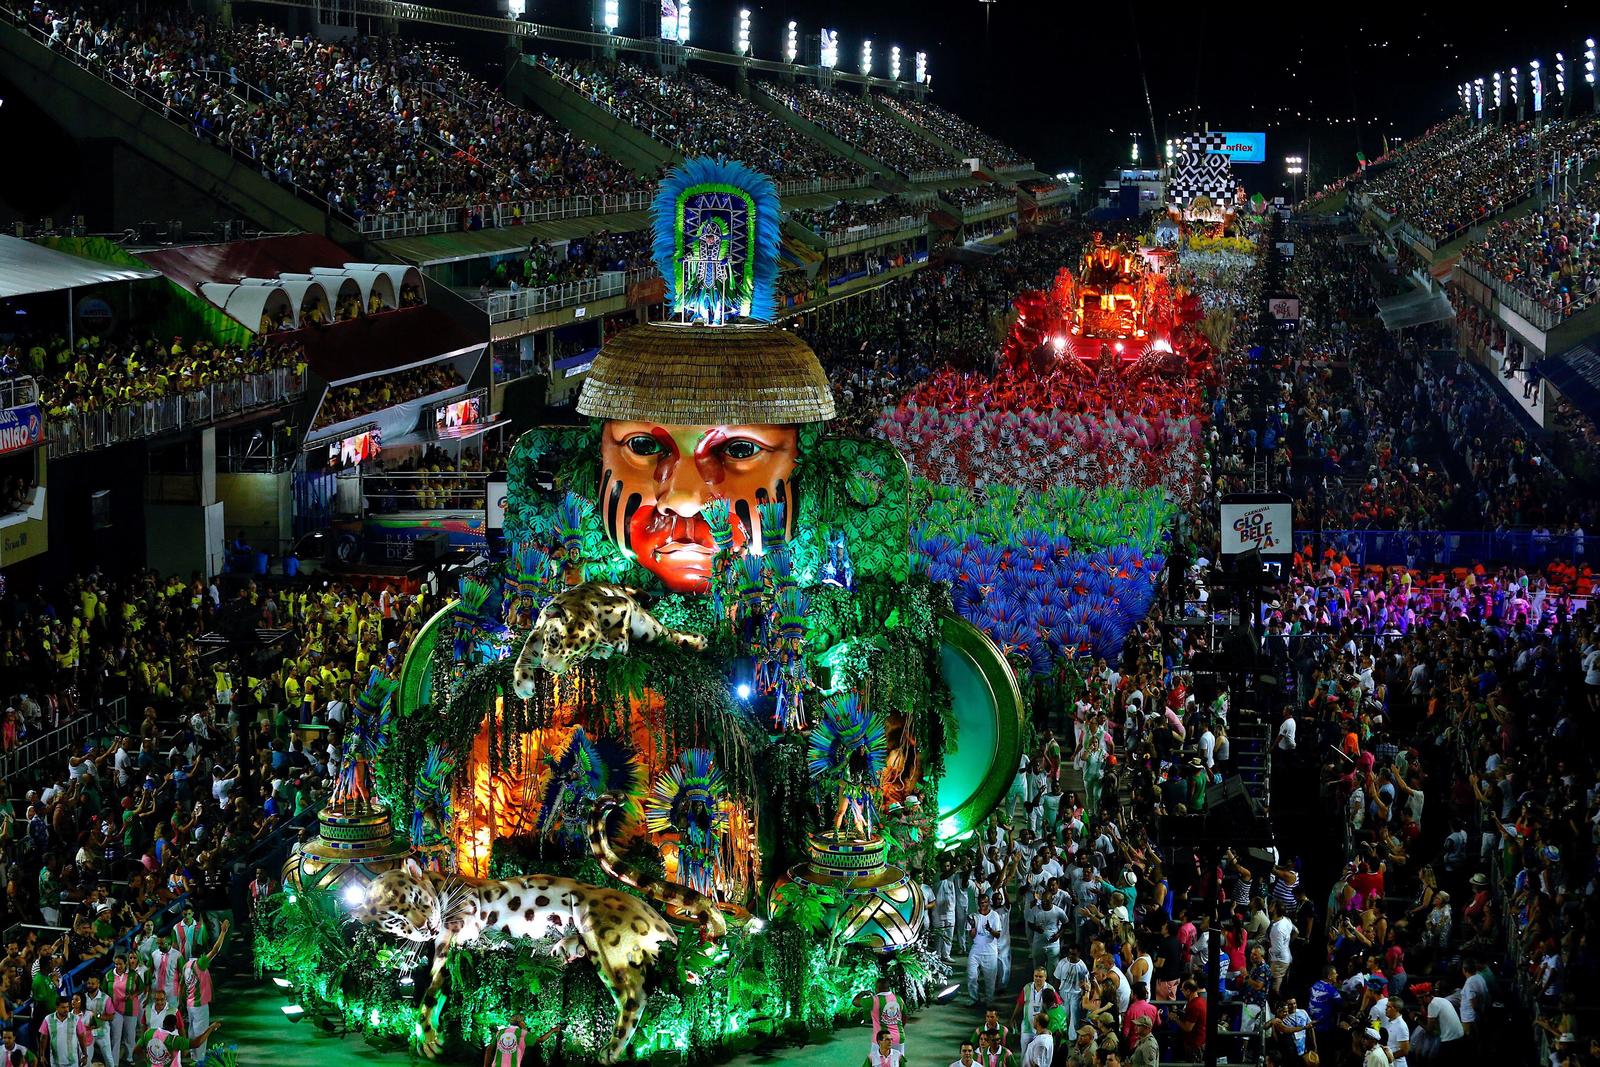 La escuela de samba Mangueira, con un desfile en que realzó la importancia de negros, indios, mujeres y otras minorías en la historia de Brasil, fue proclamada como la mejor del carnaval. (EFE)